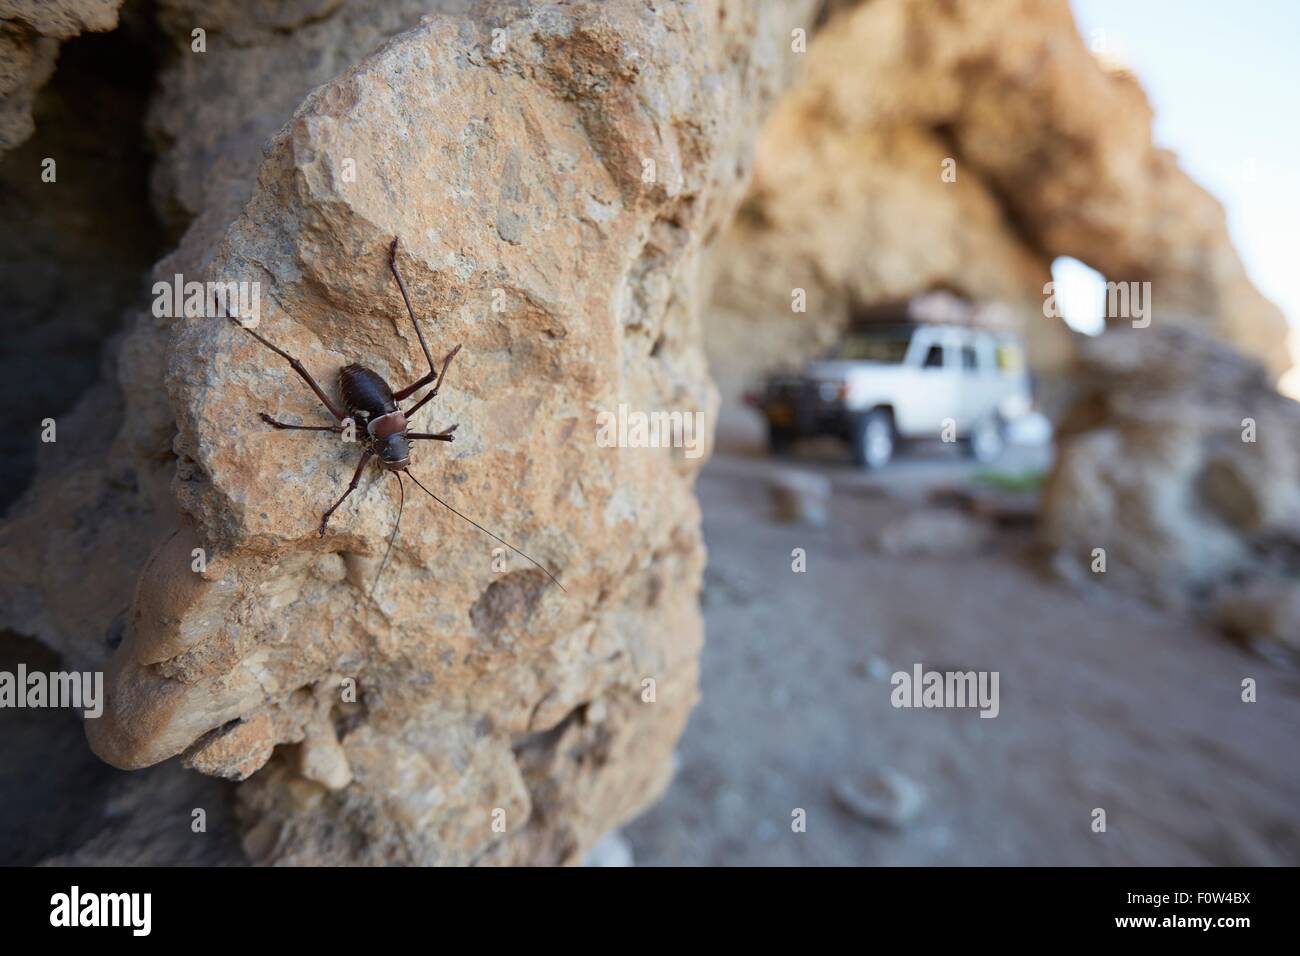 Insecte sur rock, Namib-Naukluft National Park, Namibie Banque D'Images